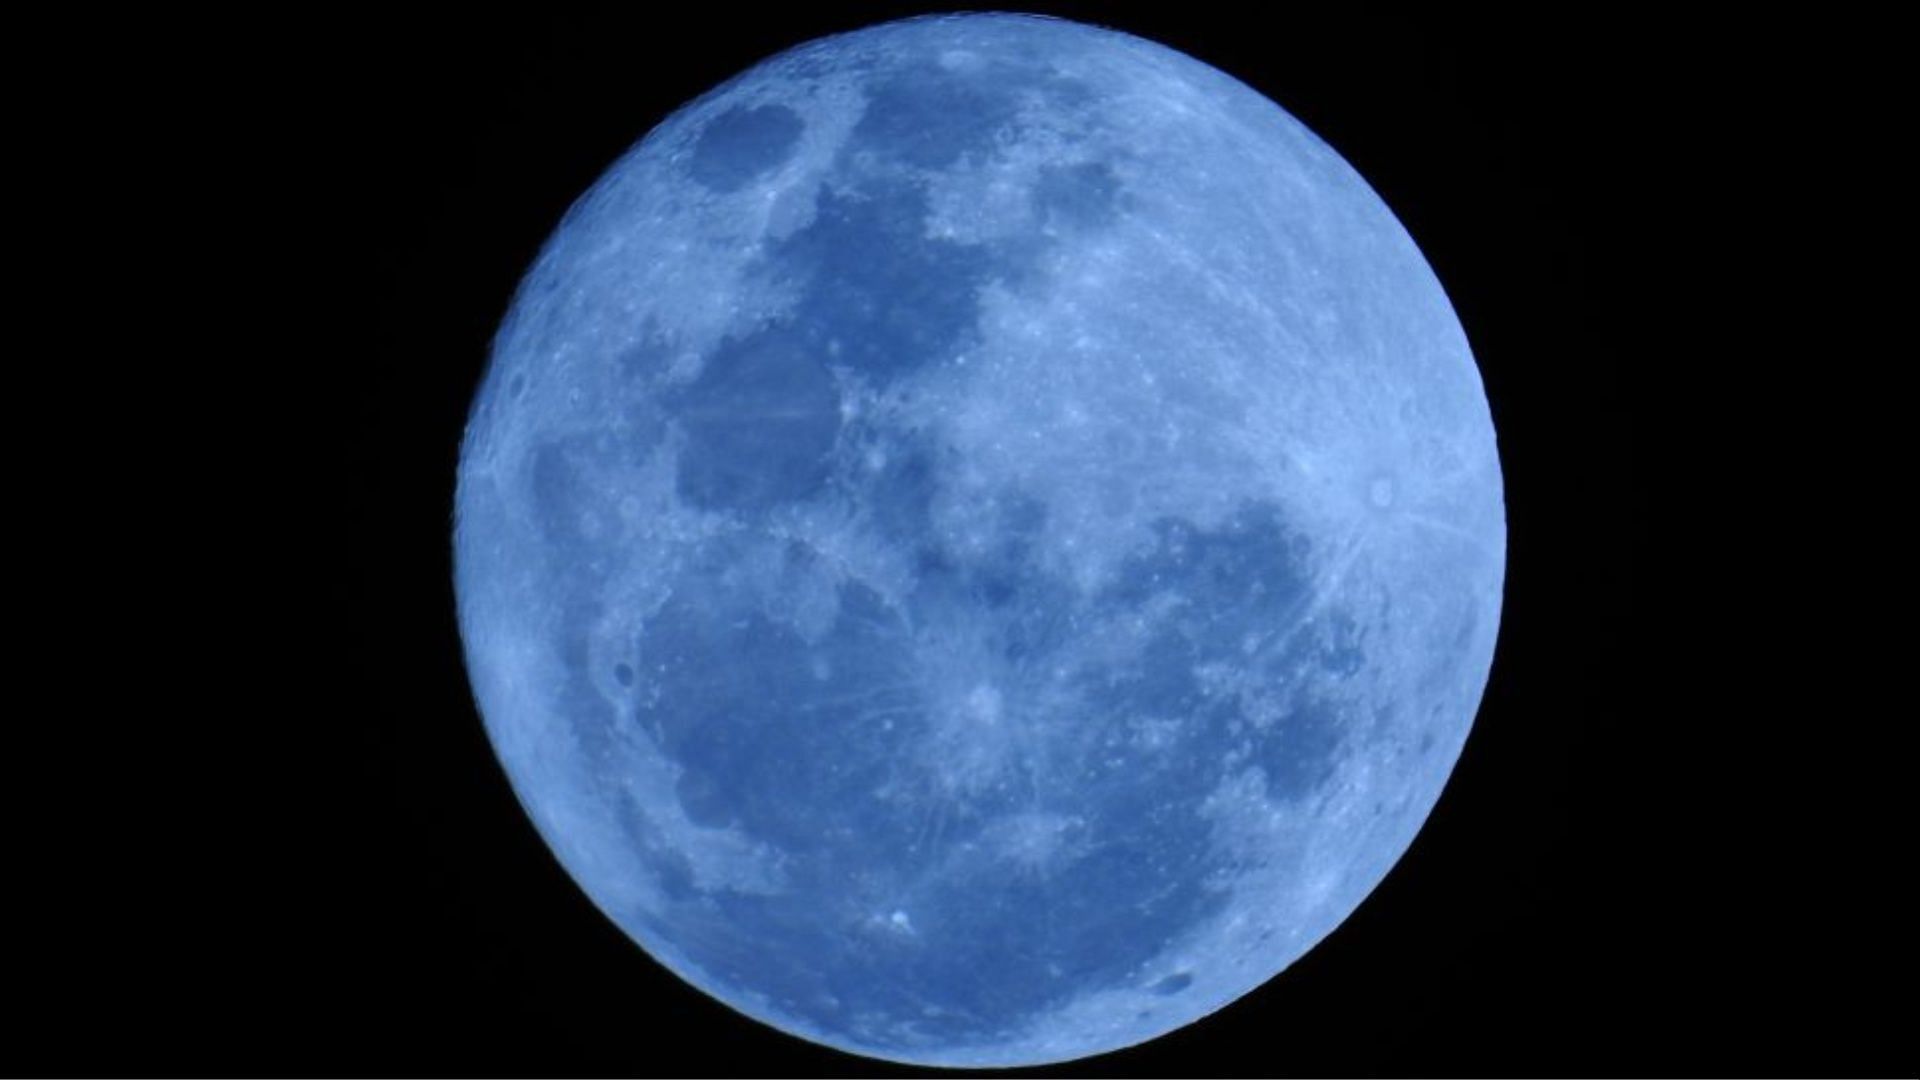 Blue Moon - Terraria Wiki